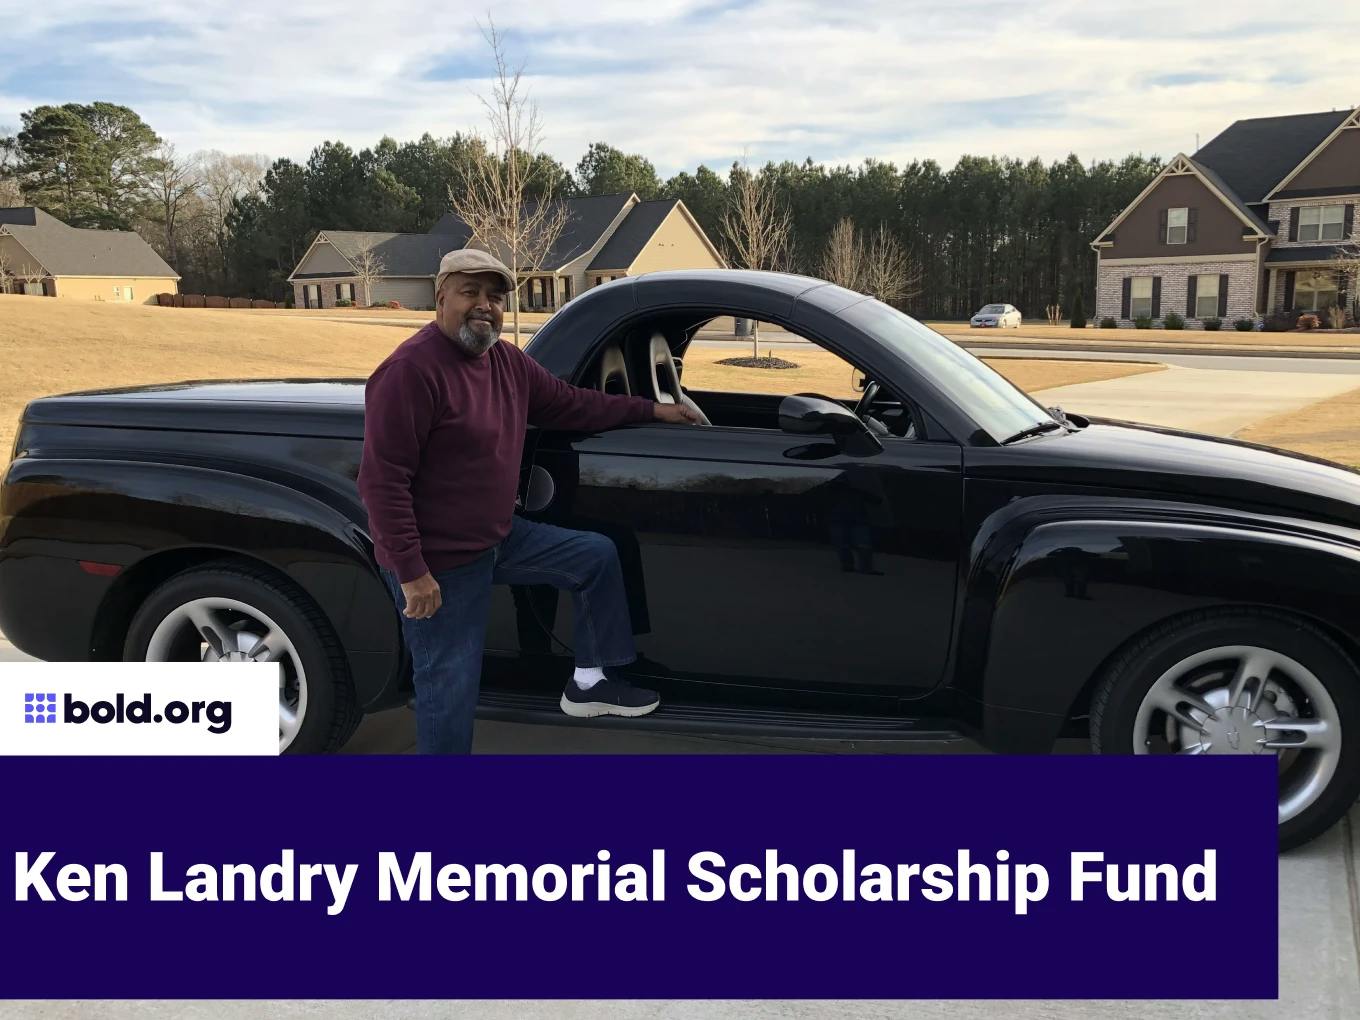 Ken Landry Memorial Scholarship Fund